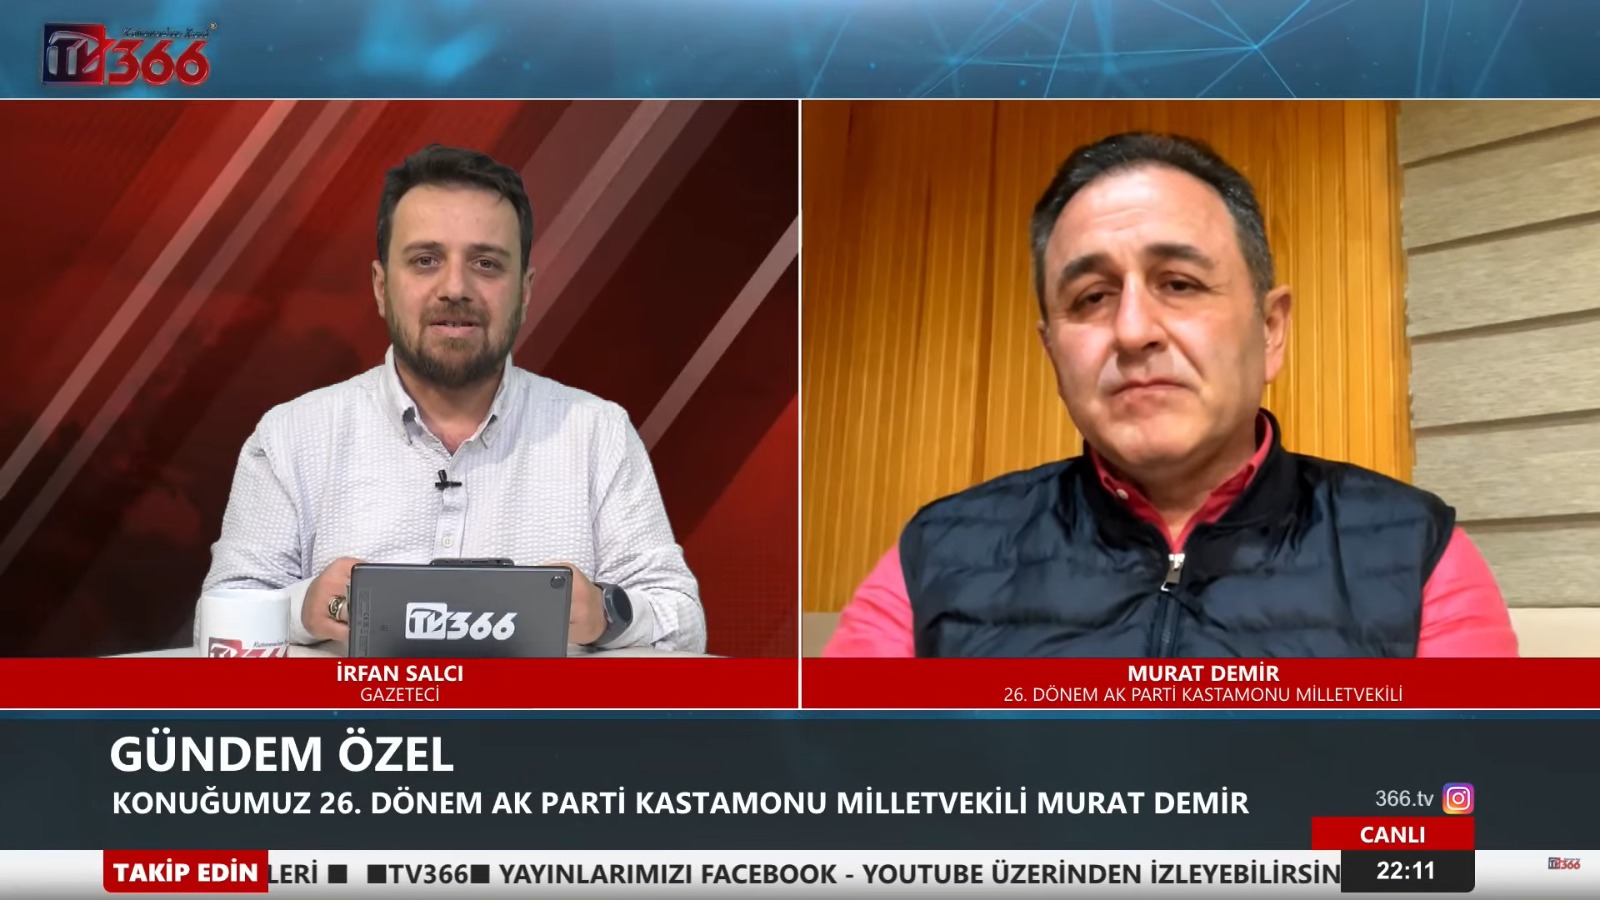 Murat Demir Tv366 (2)